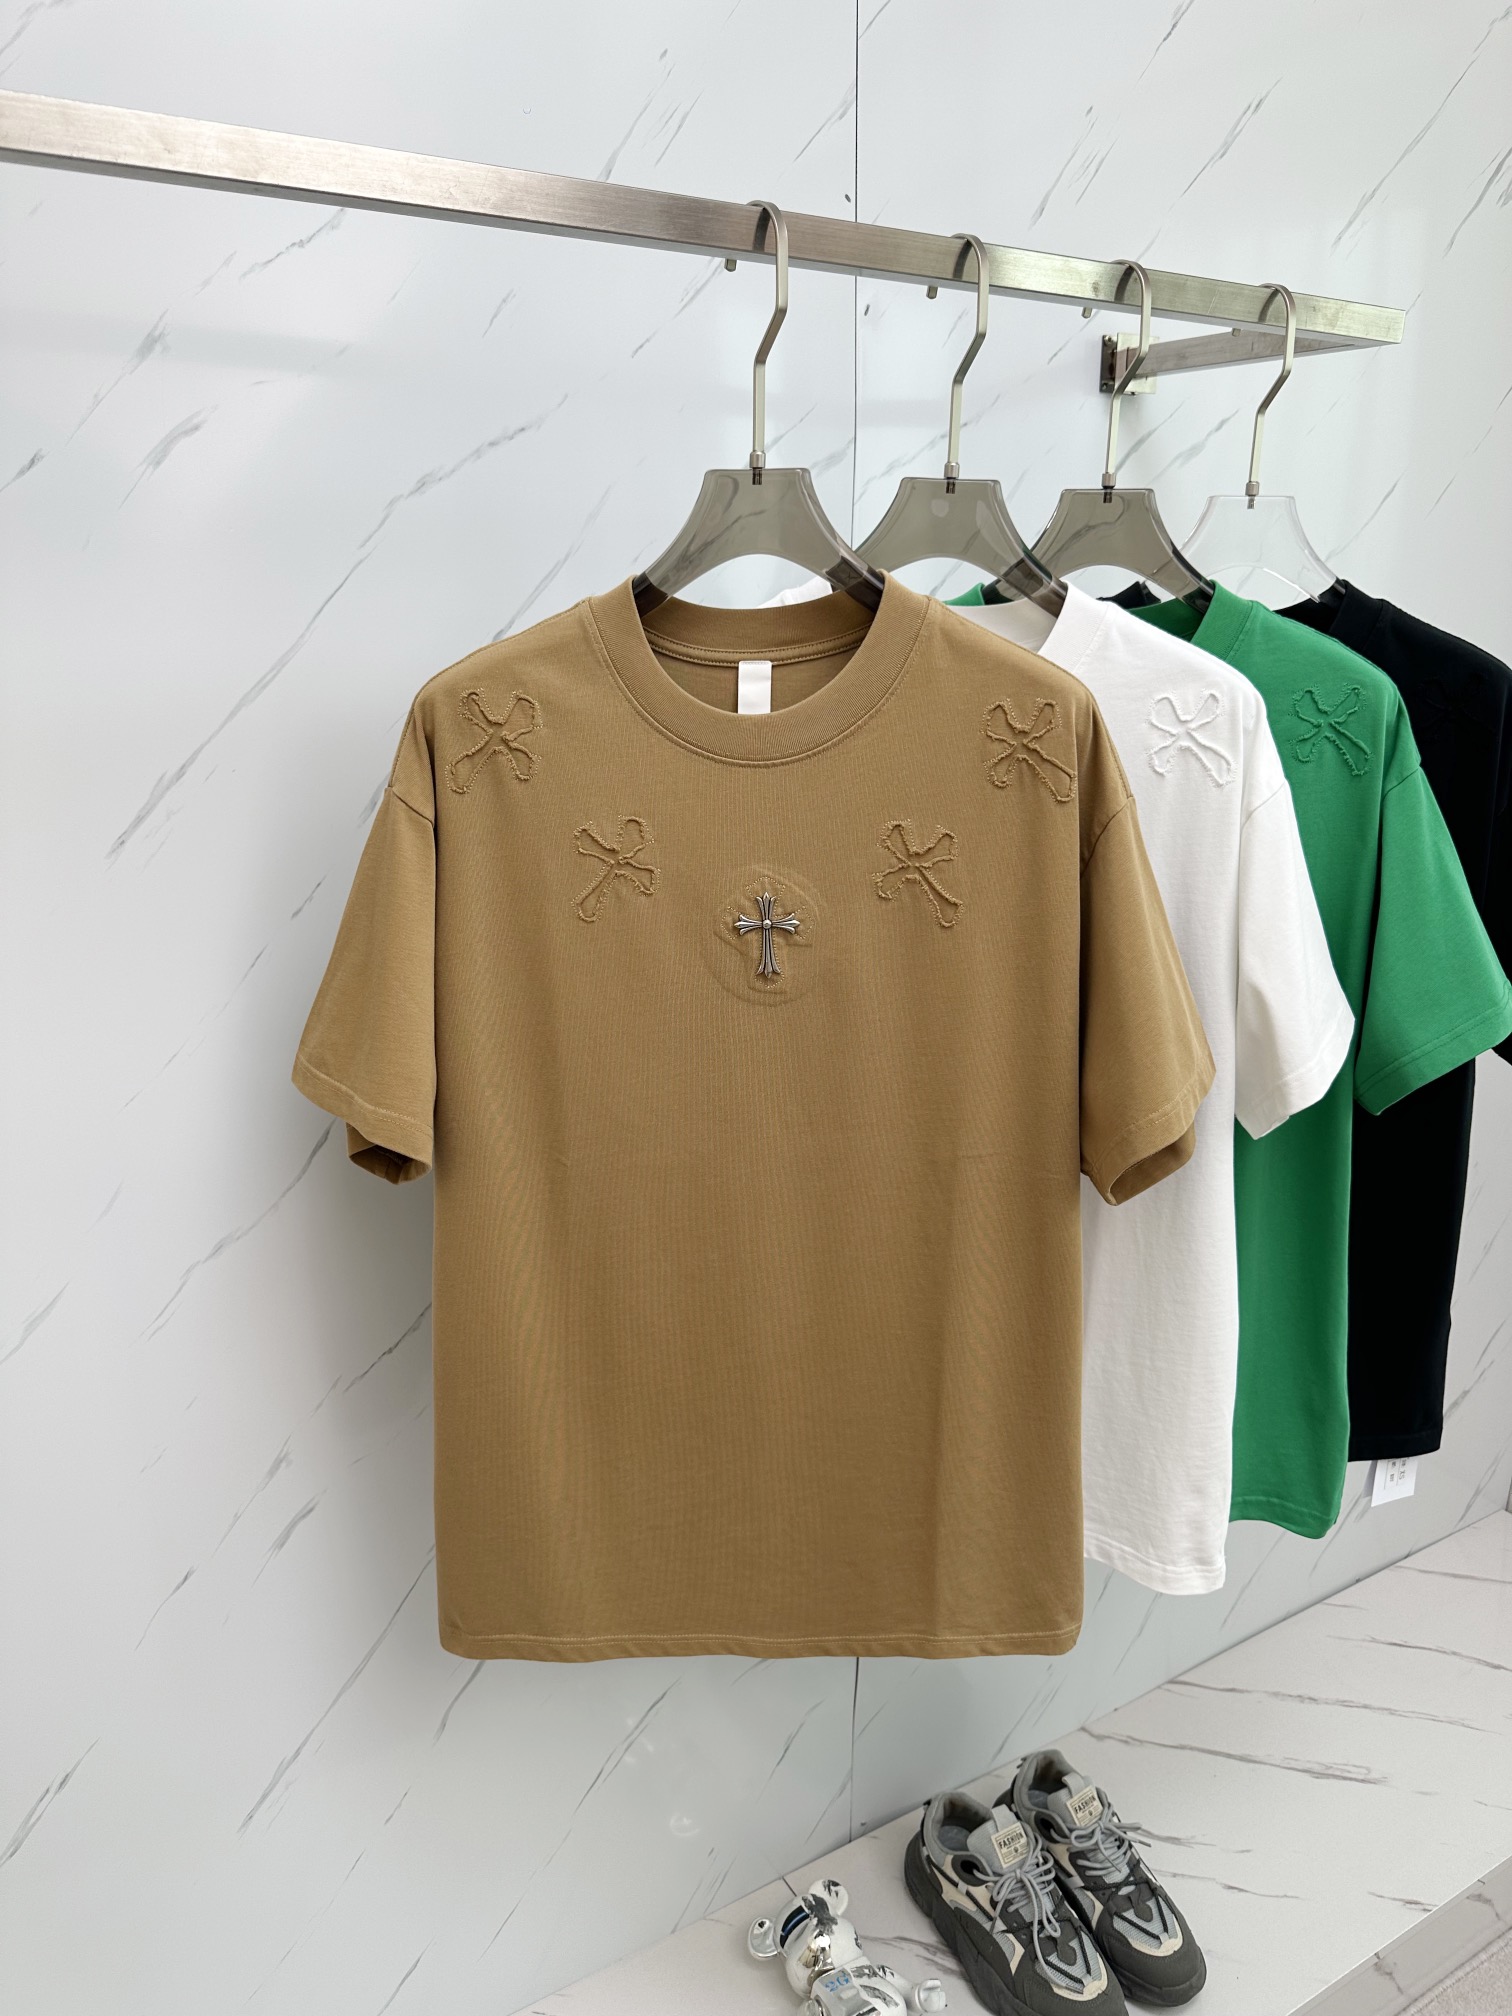 Chrome Hearts Clothing T-Shirt Unisex Short Sleeve